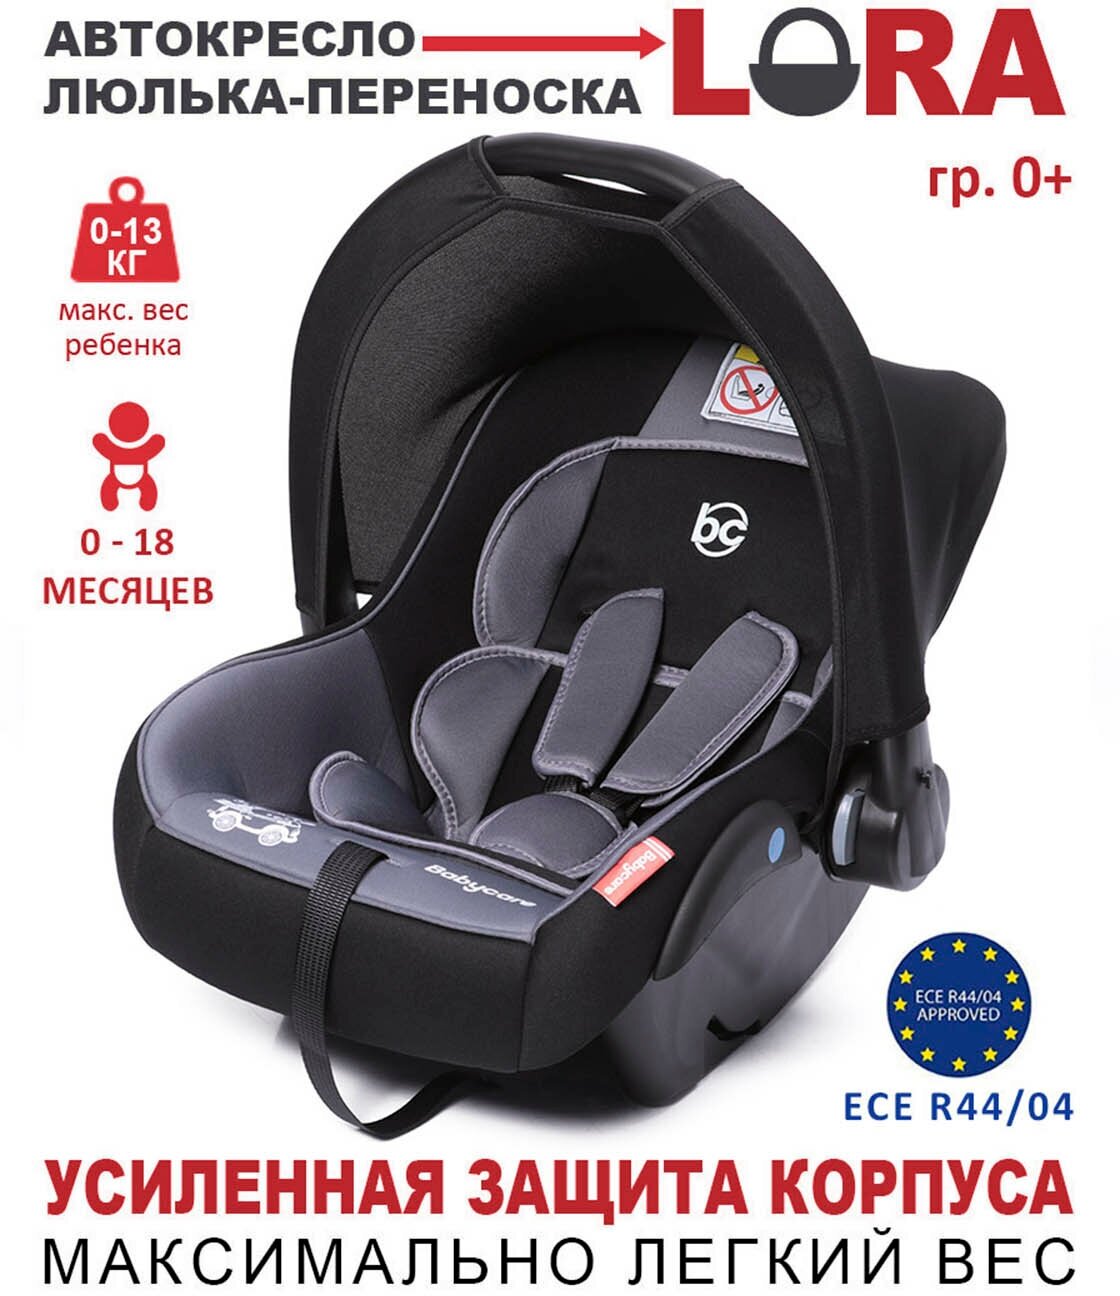 Baby Care Детское автомобильное кресло Lora гр 0+, 0-13кг, (0-1,5 лет), серый/черный